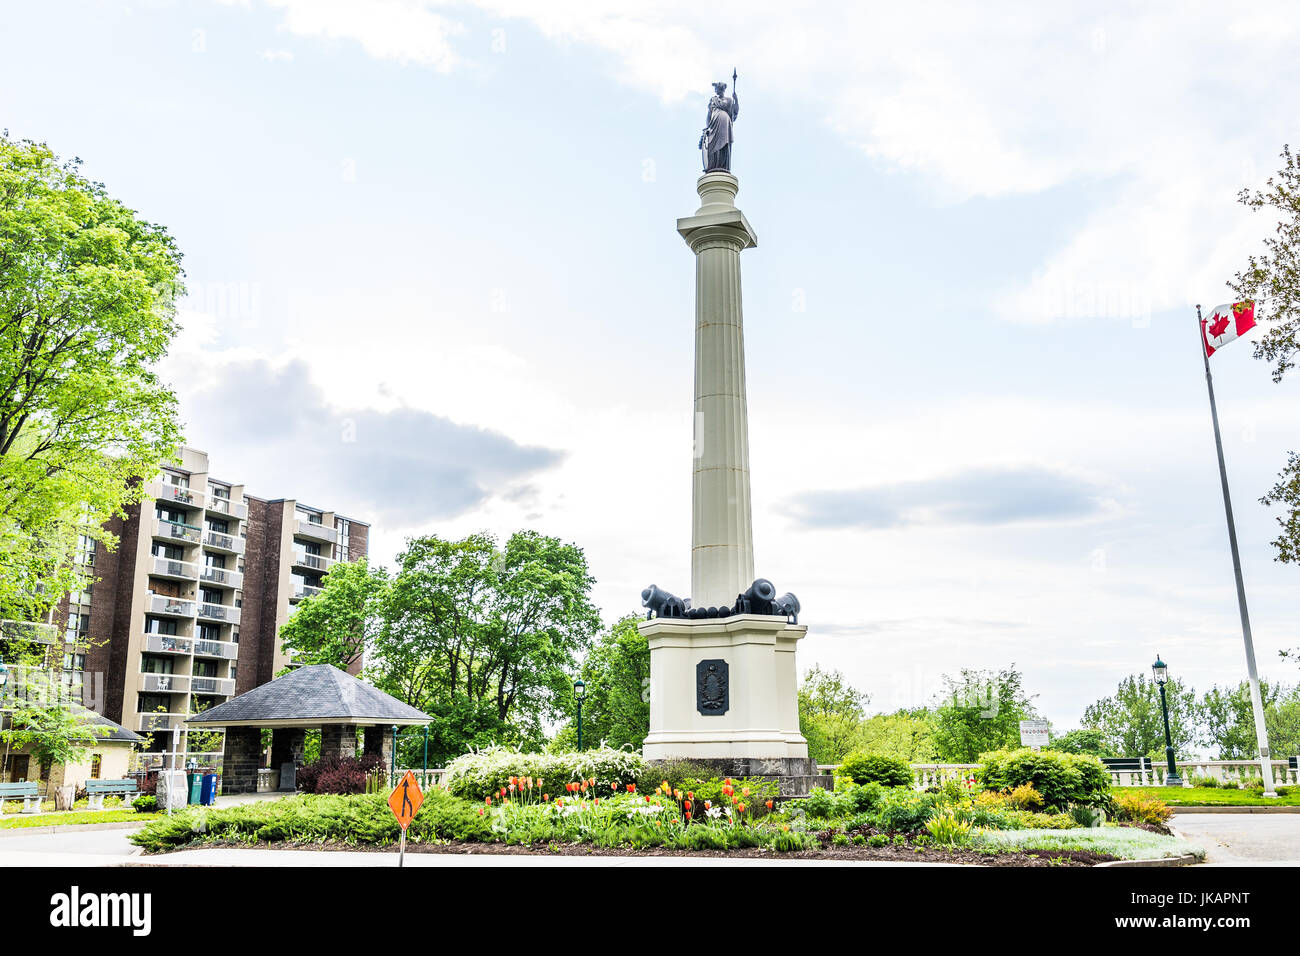 La ville de Québec, Canada - 31 mai 2017 : Monument commémoratif des Braves sur la rue Sainte Foy Banque D'Images